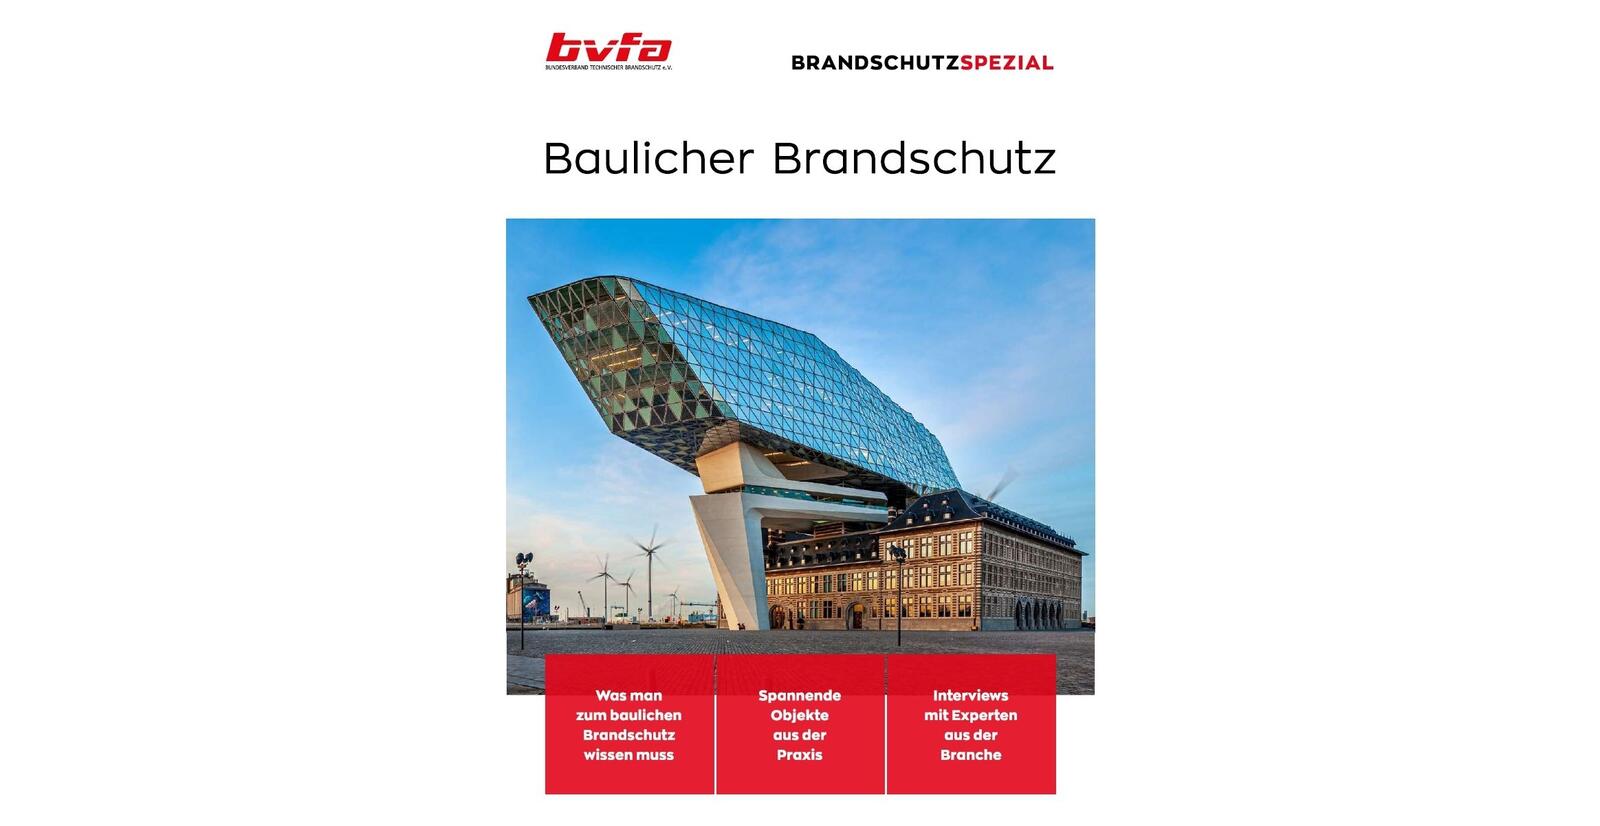 bvfa_baulicher brandschutz_special.jpeg